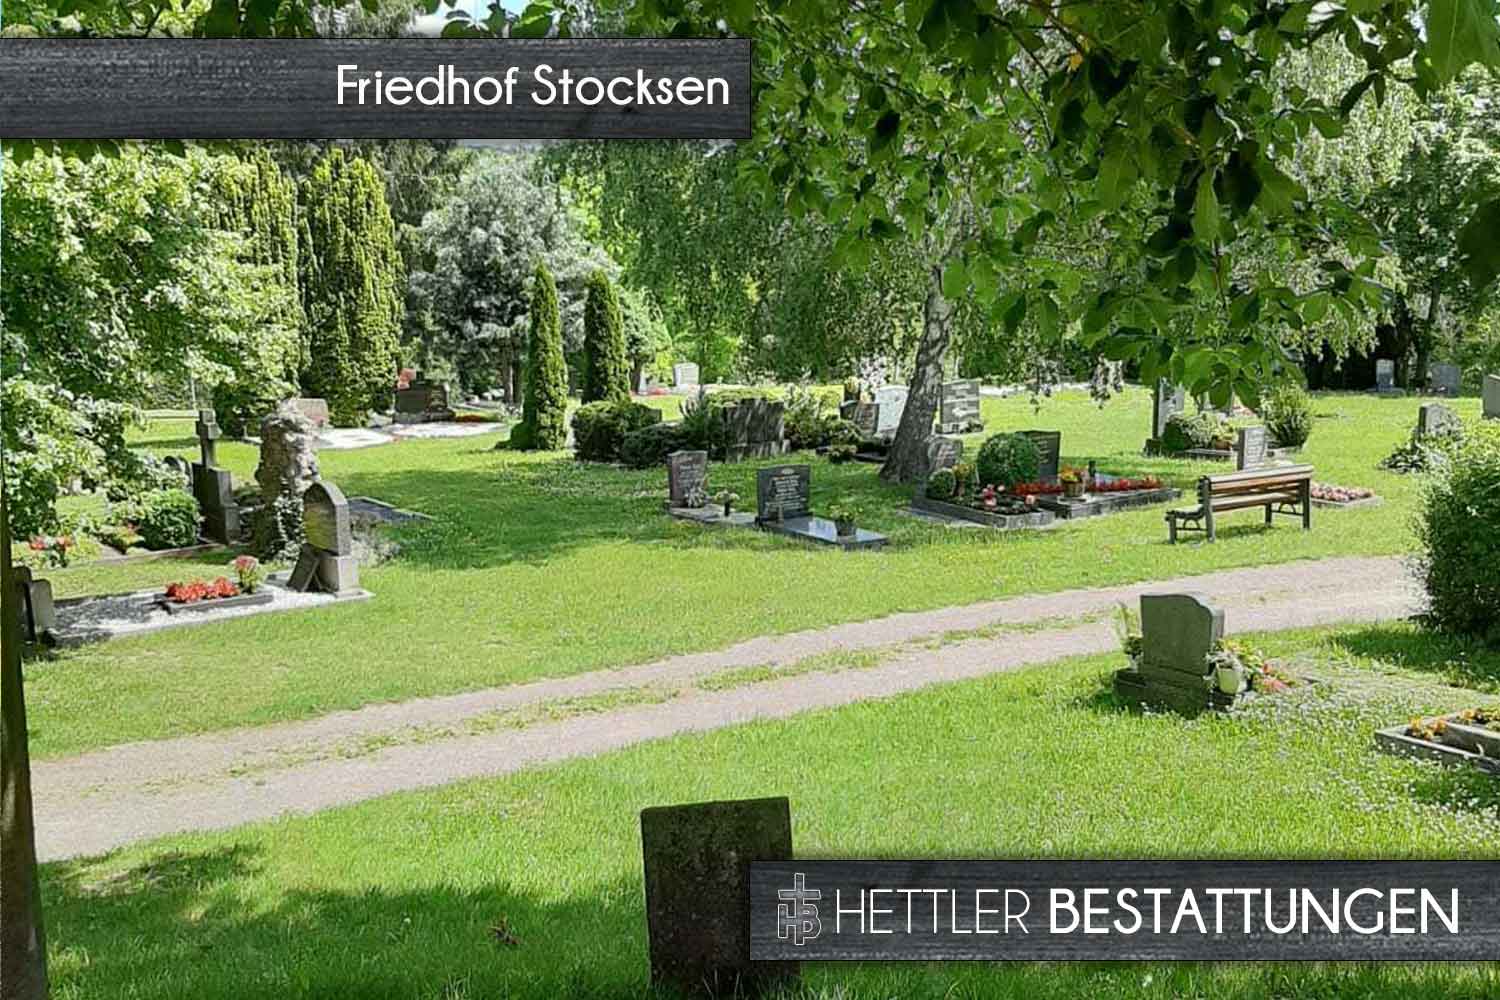 Friedhof in Sondershausen-Stockhausen. Ihr Ort des Abschieds mit Hettler Bestattungen.